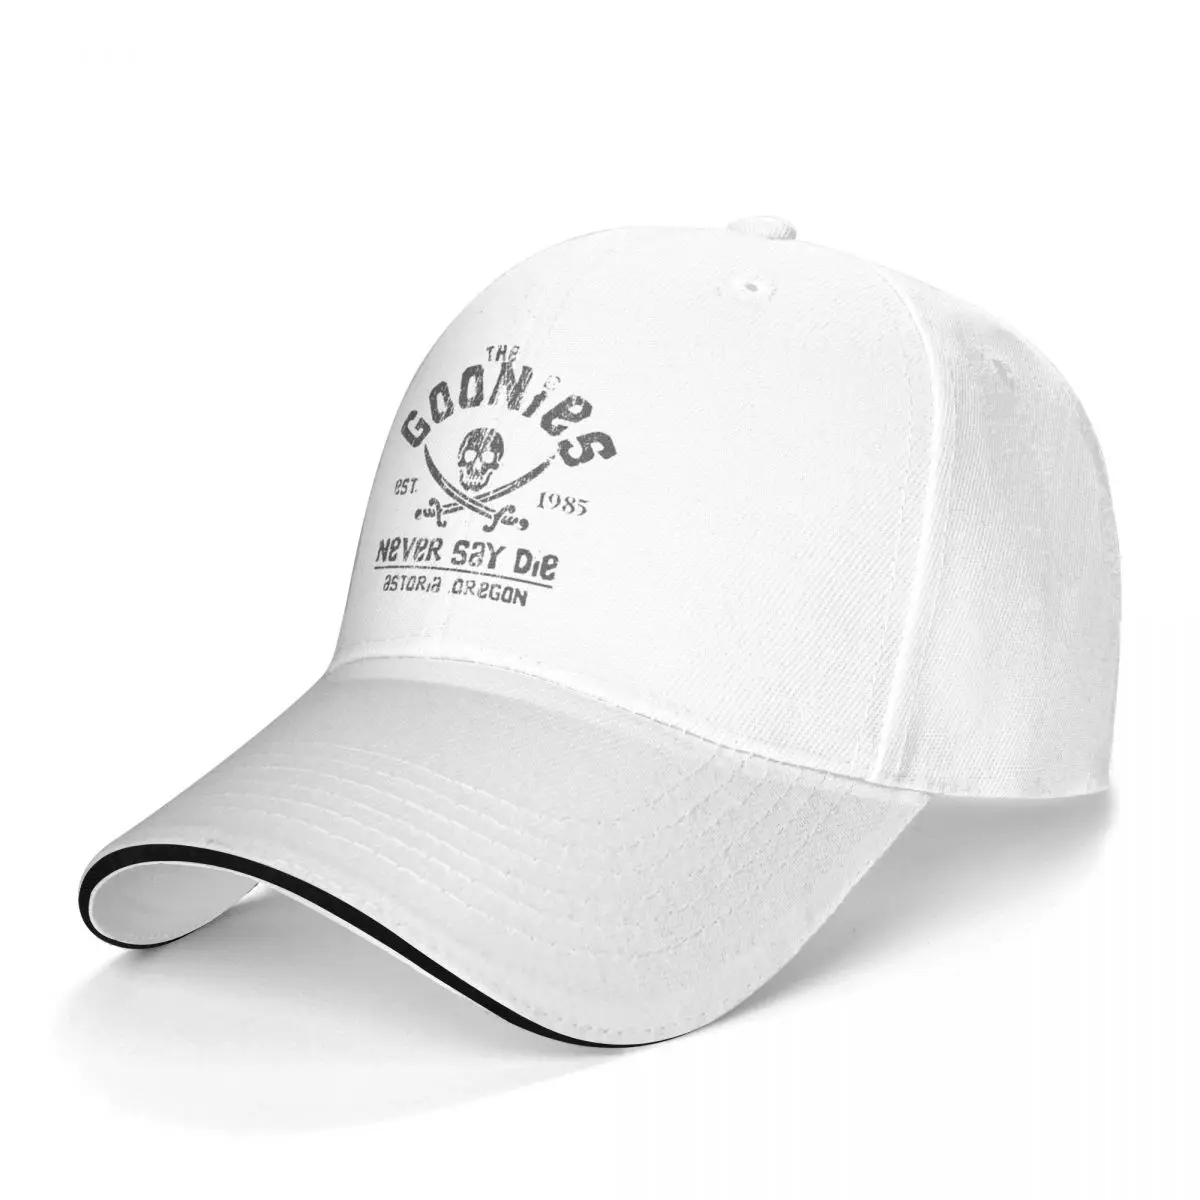 Movie Baseball Cap The Goonies Never Say Die Grey on Black Trendy Trucker Hat Spring Men Tennis Print Baseball Caps